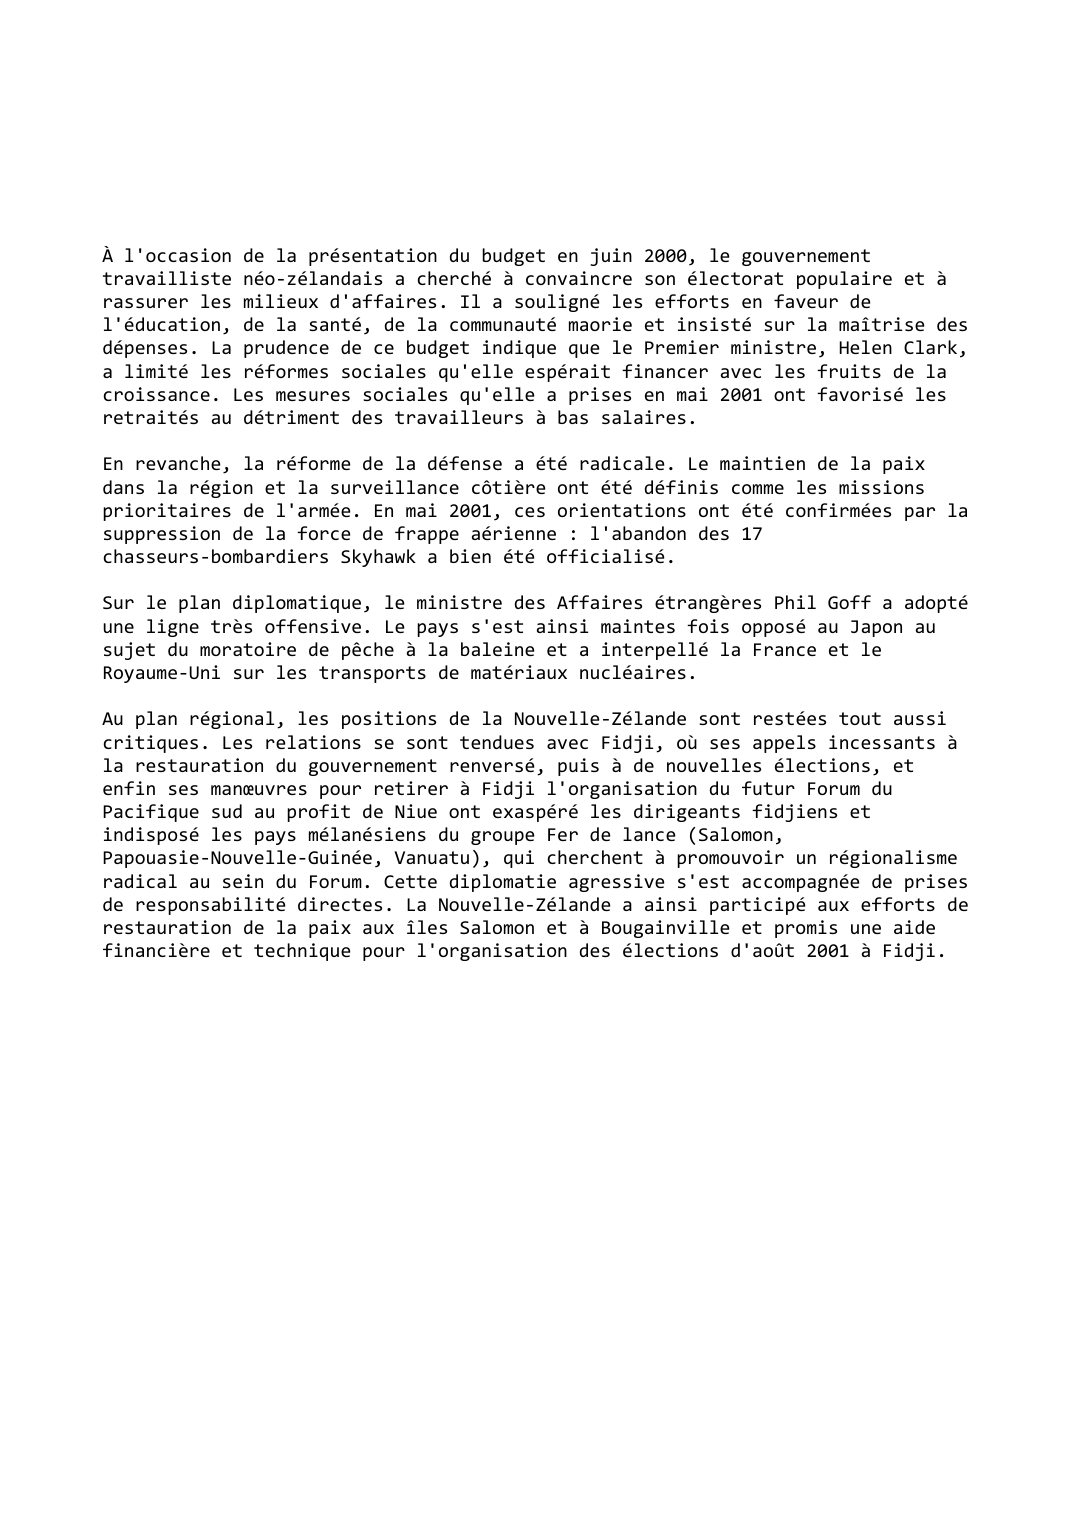 Prévisualisation du document Nouvelle-Zélande (2000-2001)

Une ligne diplomatique offensive